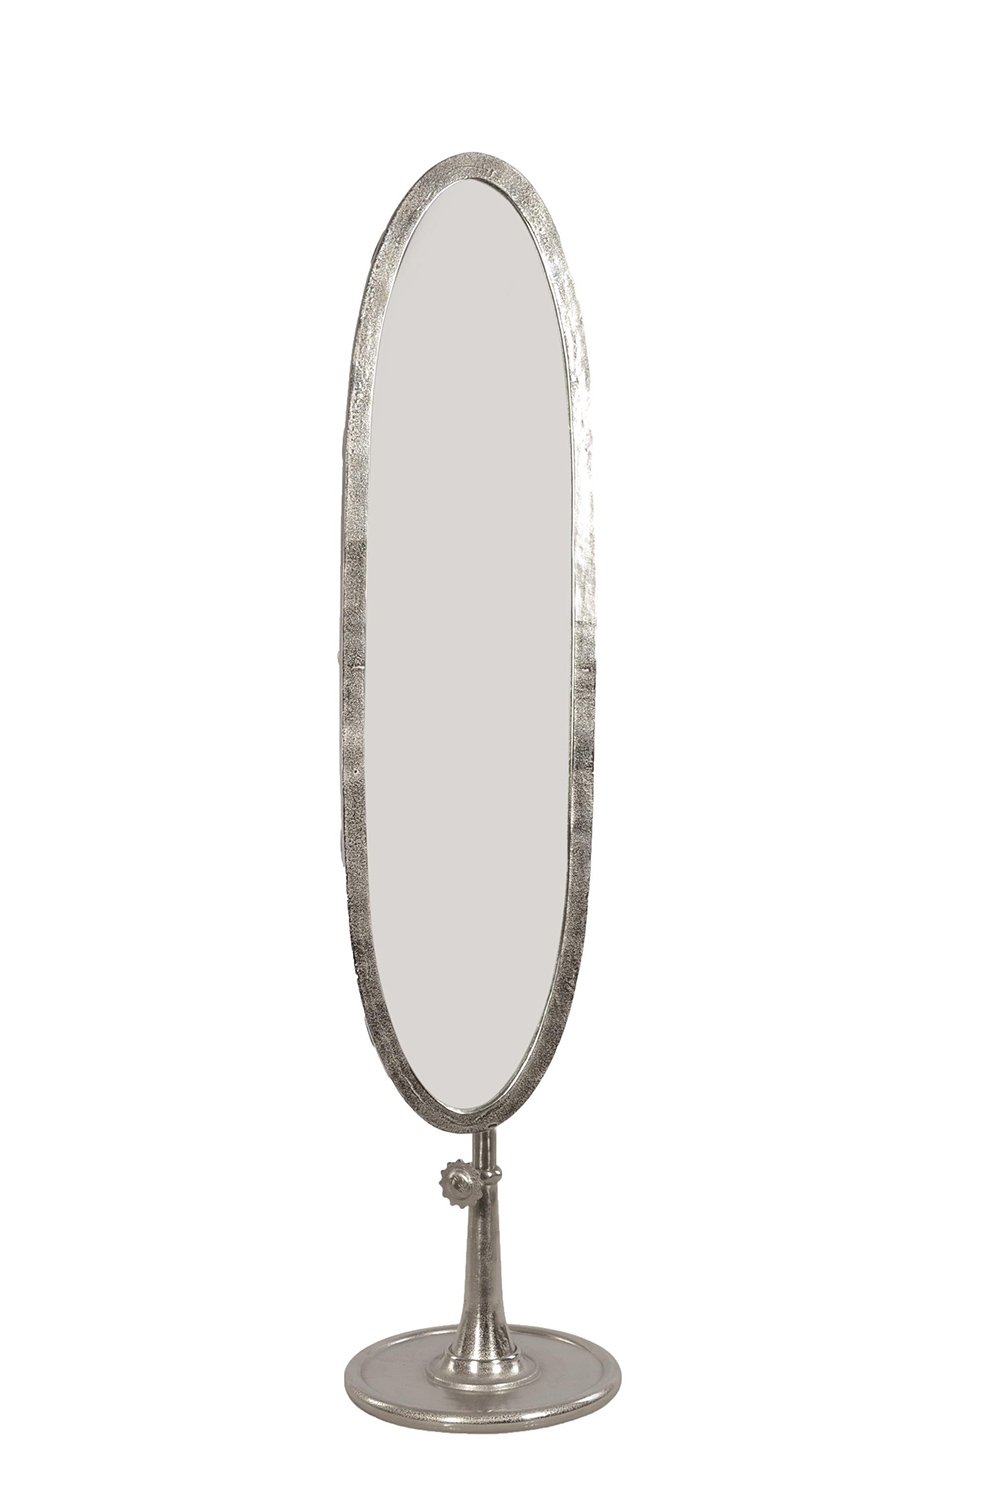 Ren-Wil Spruce Mirror - Raw Nickel